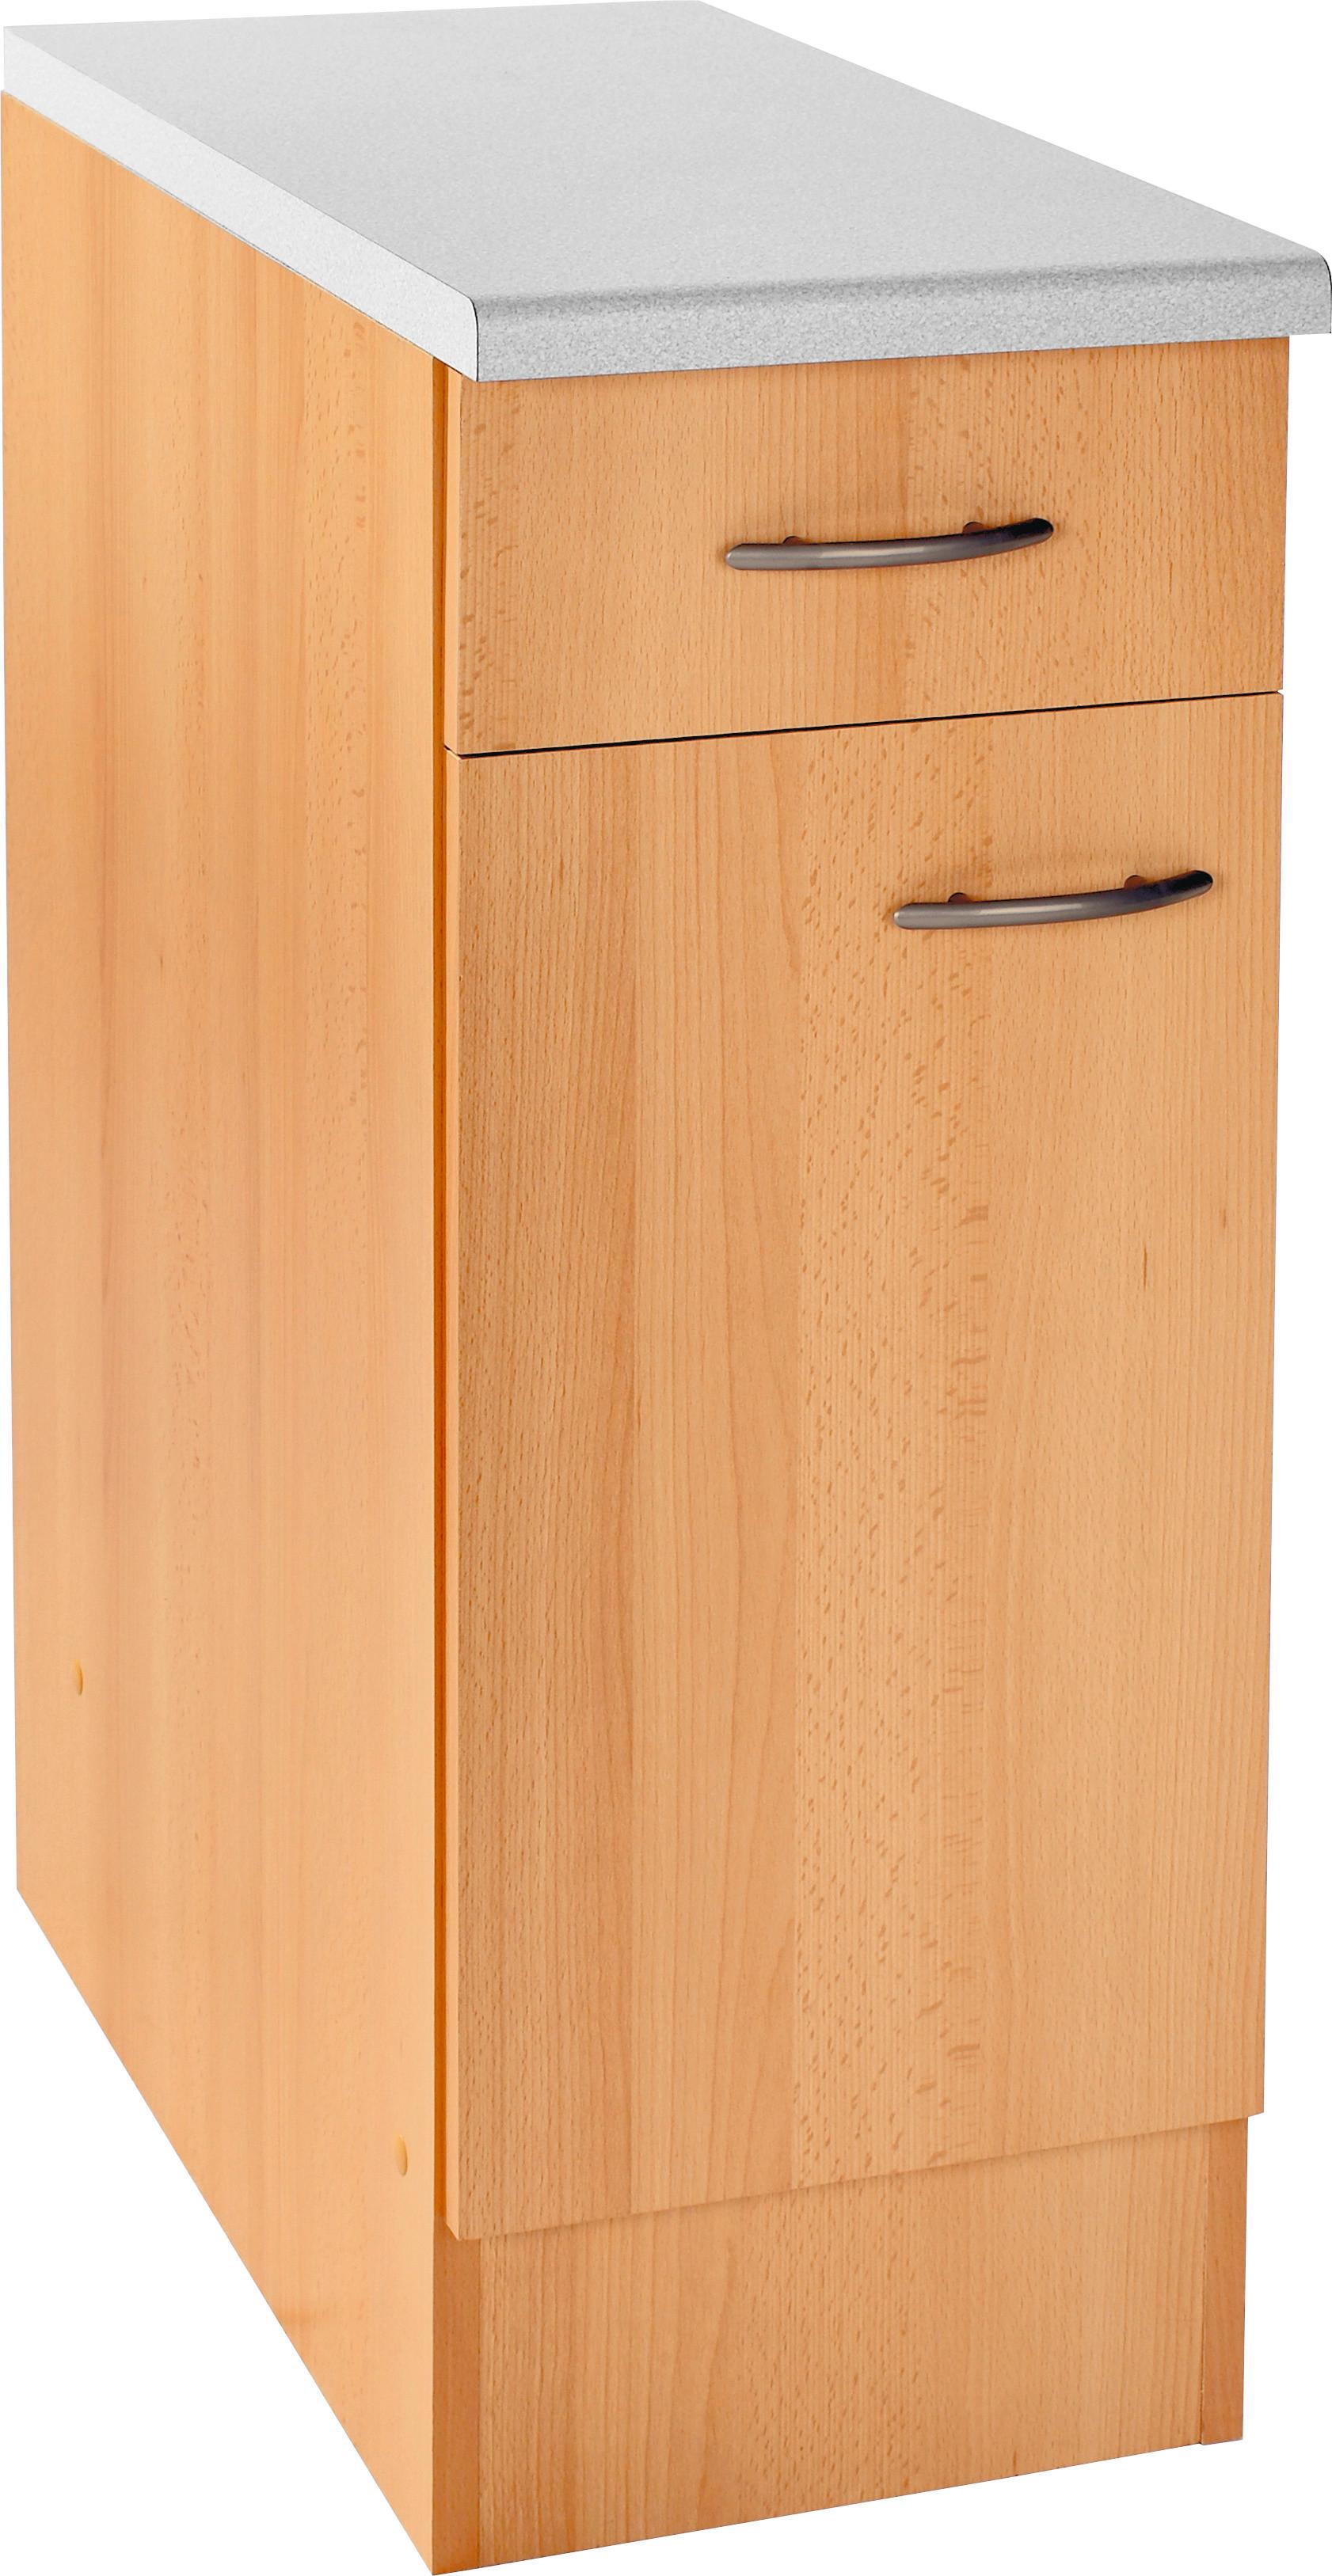 Küchenunterschrank in Buchefarbe 'Nano' - Buchefarben/Grau, MODERN, Holzwerkstoff/Kunststoff (30/85/57cm) - MID.YOU